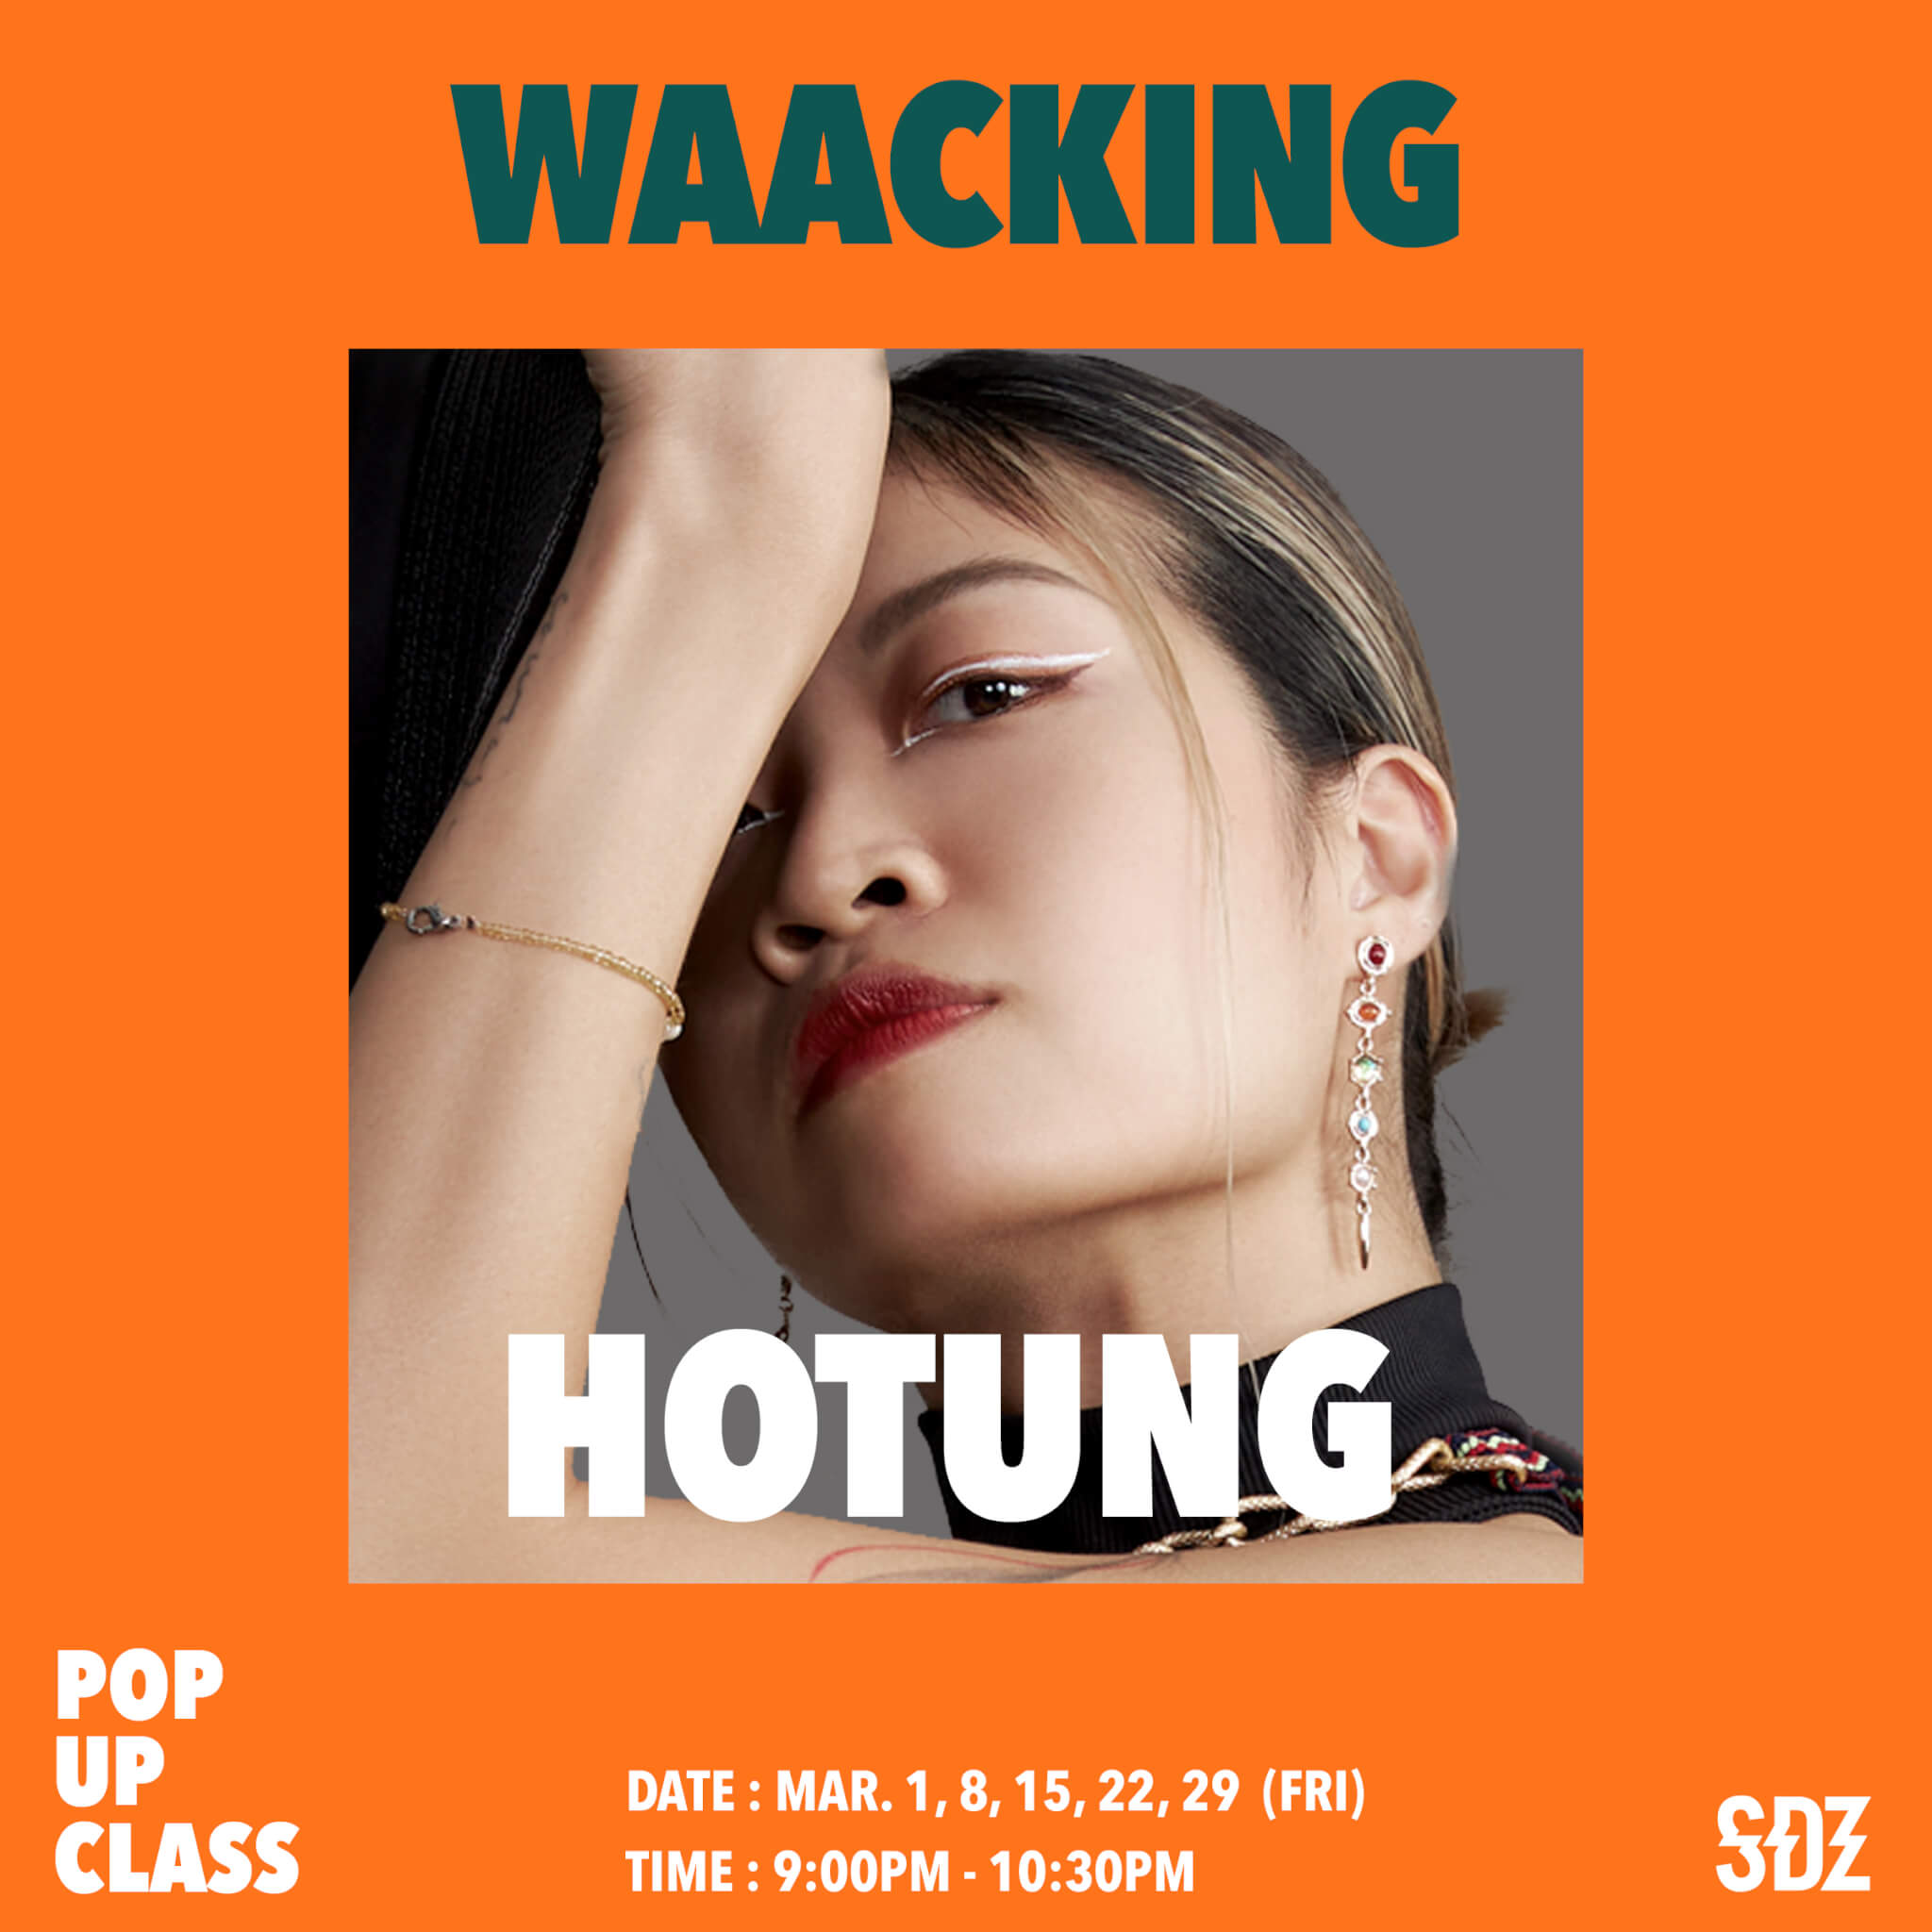 Pop Up Class - Waacking – Hotung